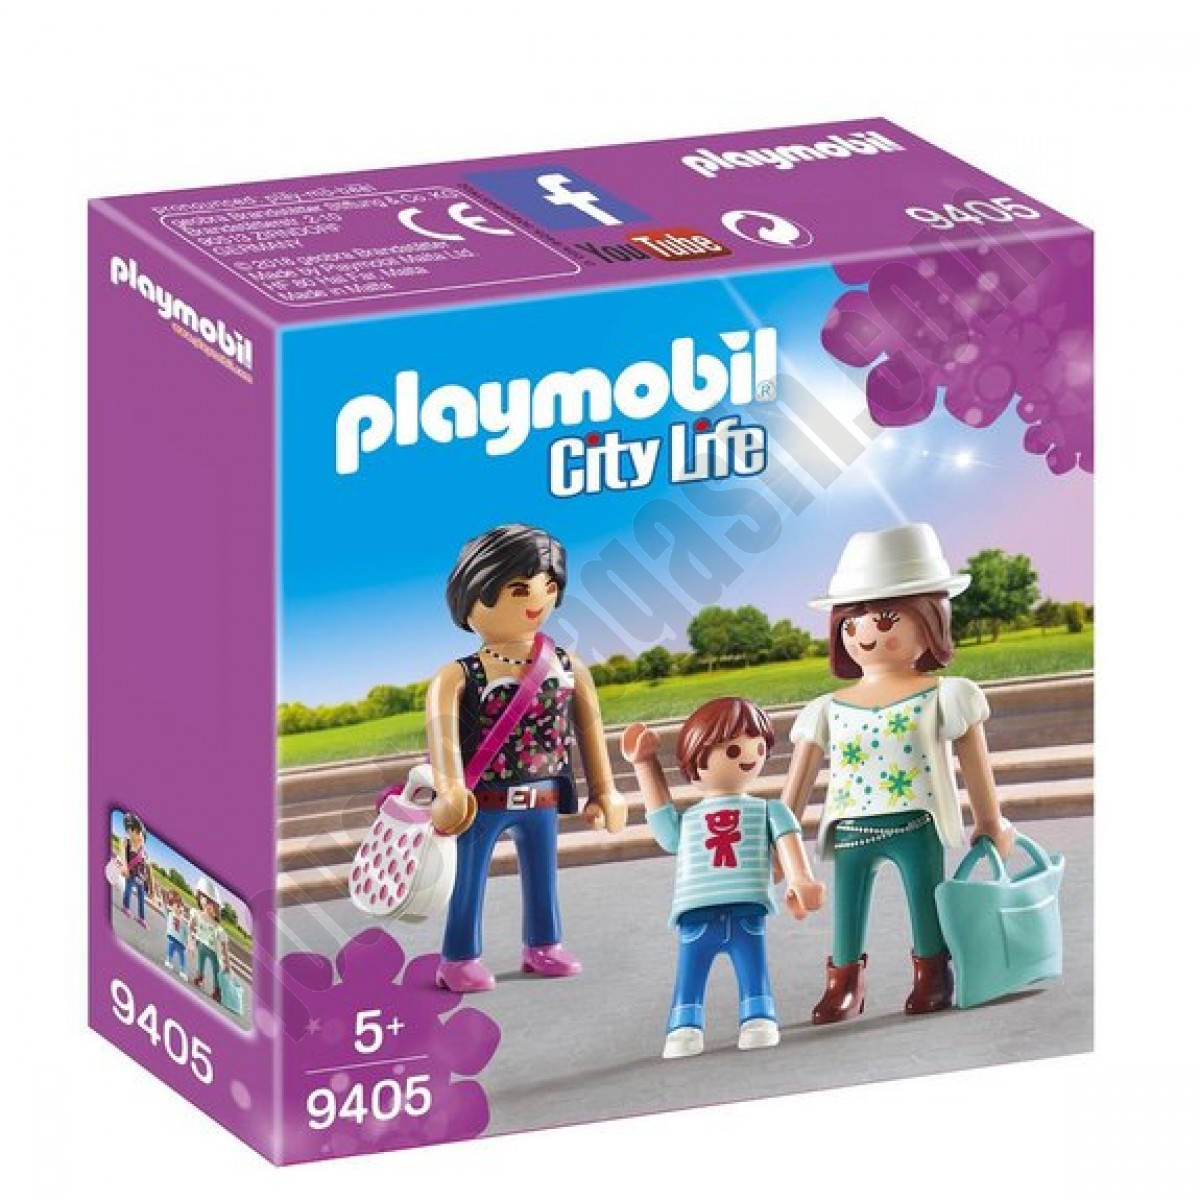 Femmes avec enfant Playmobil City Life 9405 - déstockage - Femmes avec enfant Playmobil City Life 9405 - déstockage